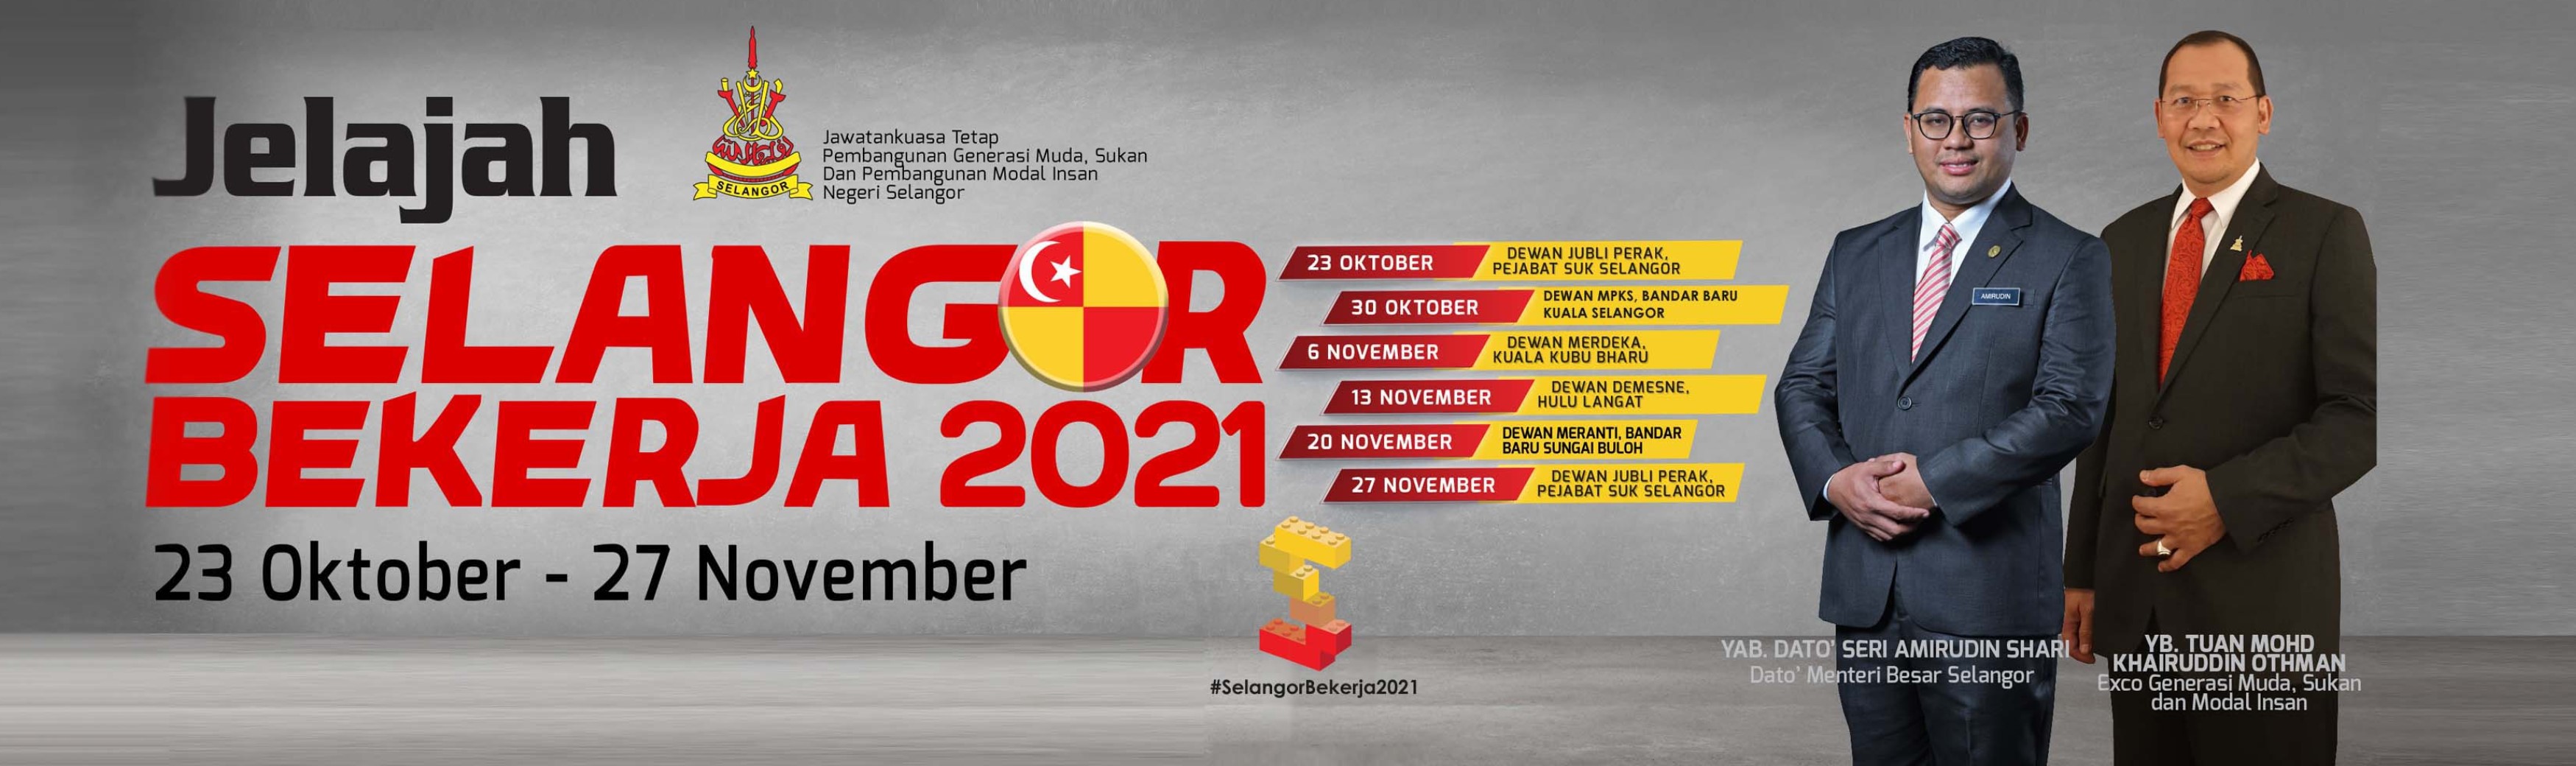 Sertai Jelajah Selangor Bekerja Dari 23 Okt - 27 Nov 2021